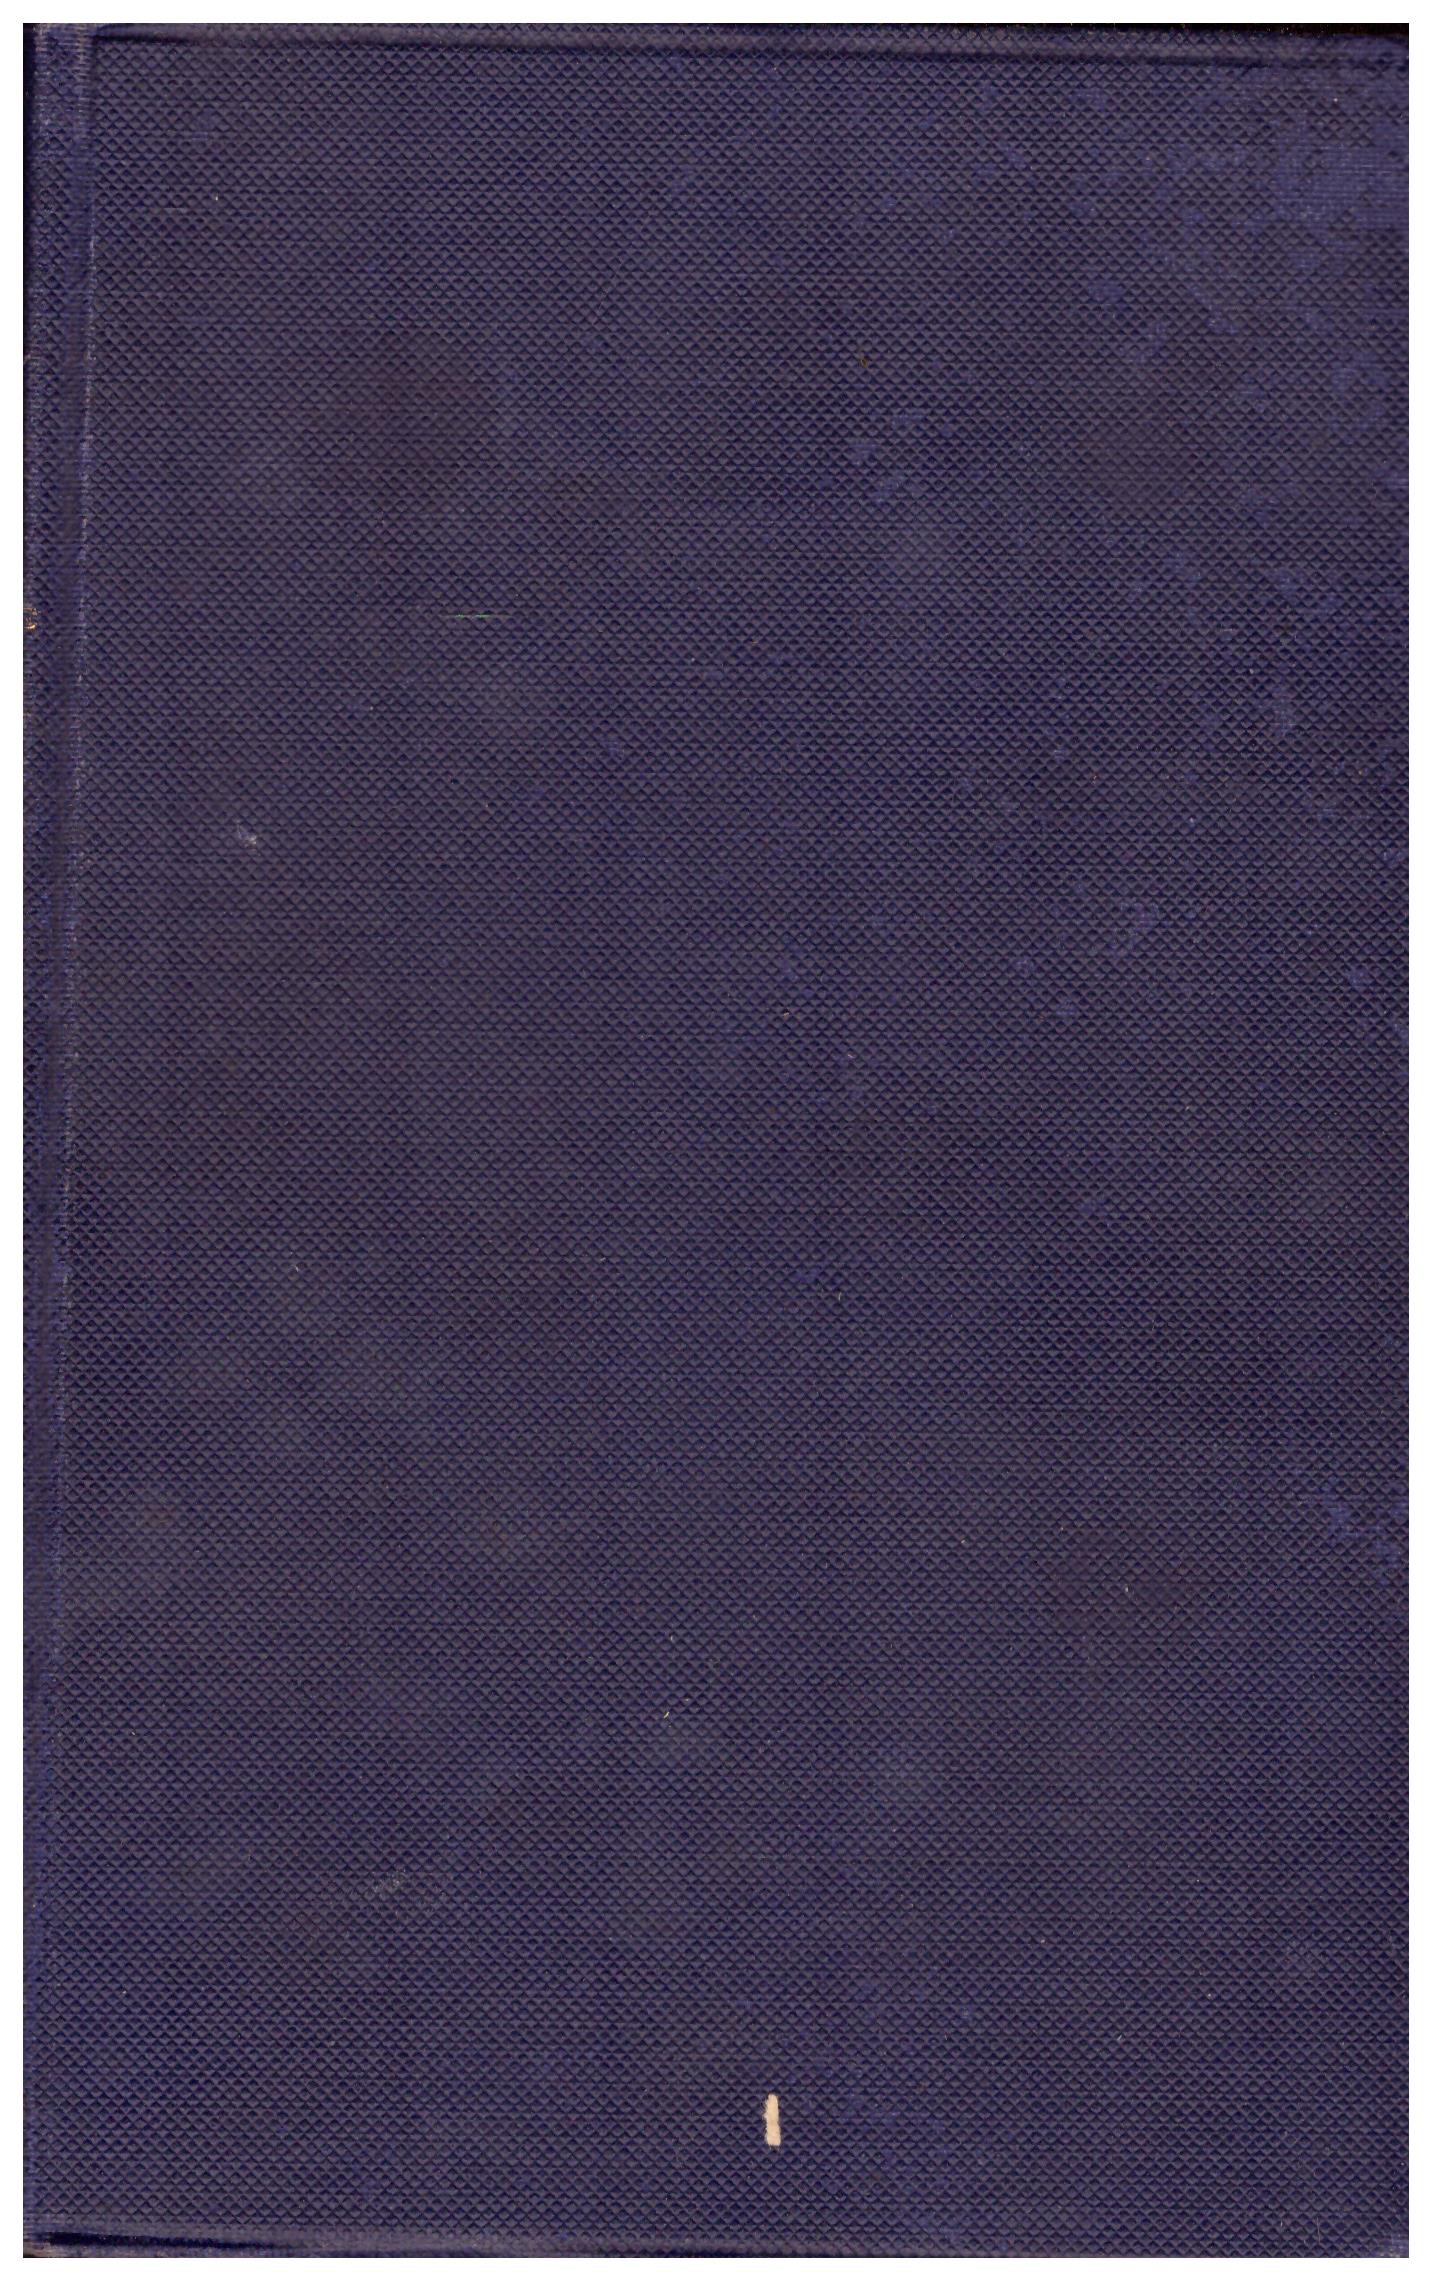 Titolo: Codex iuris canonici     Autore: AA.VV.    Editore: Typis polyglottis vaticanis